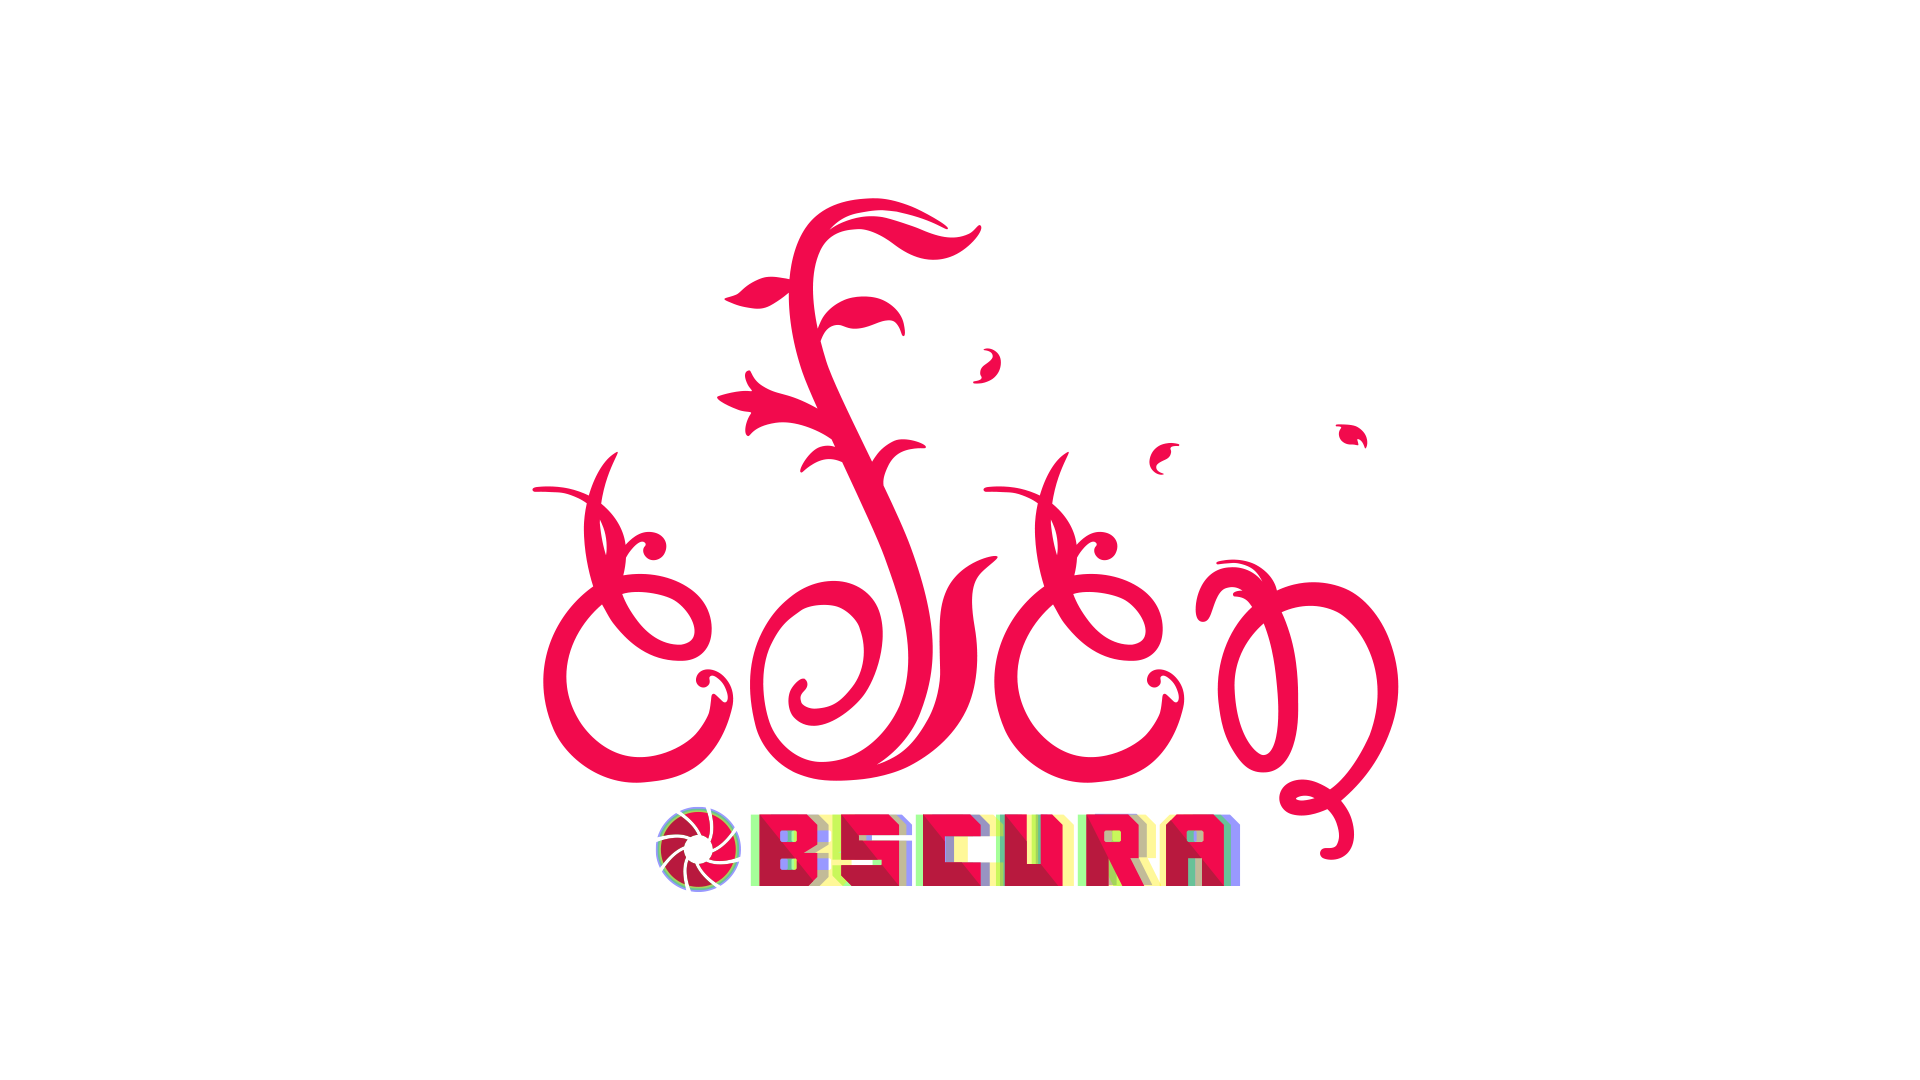 Eden obscura logo